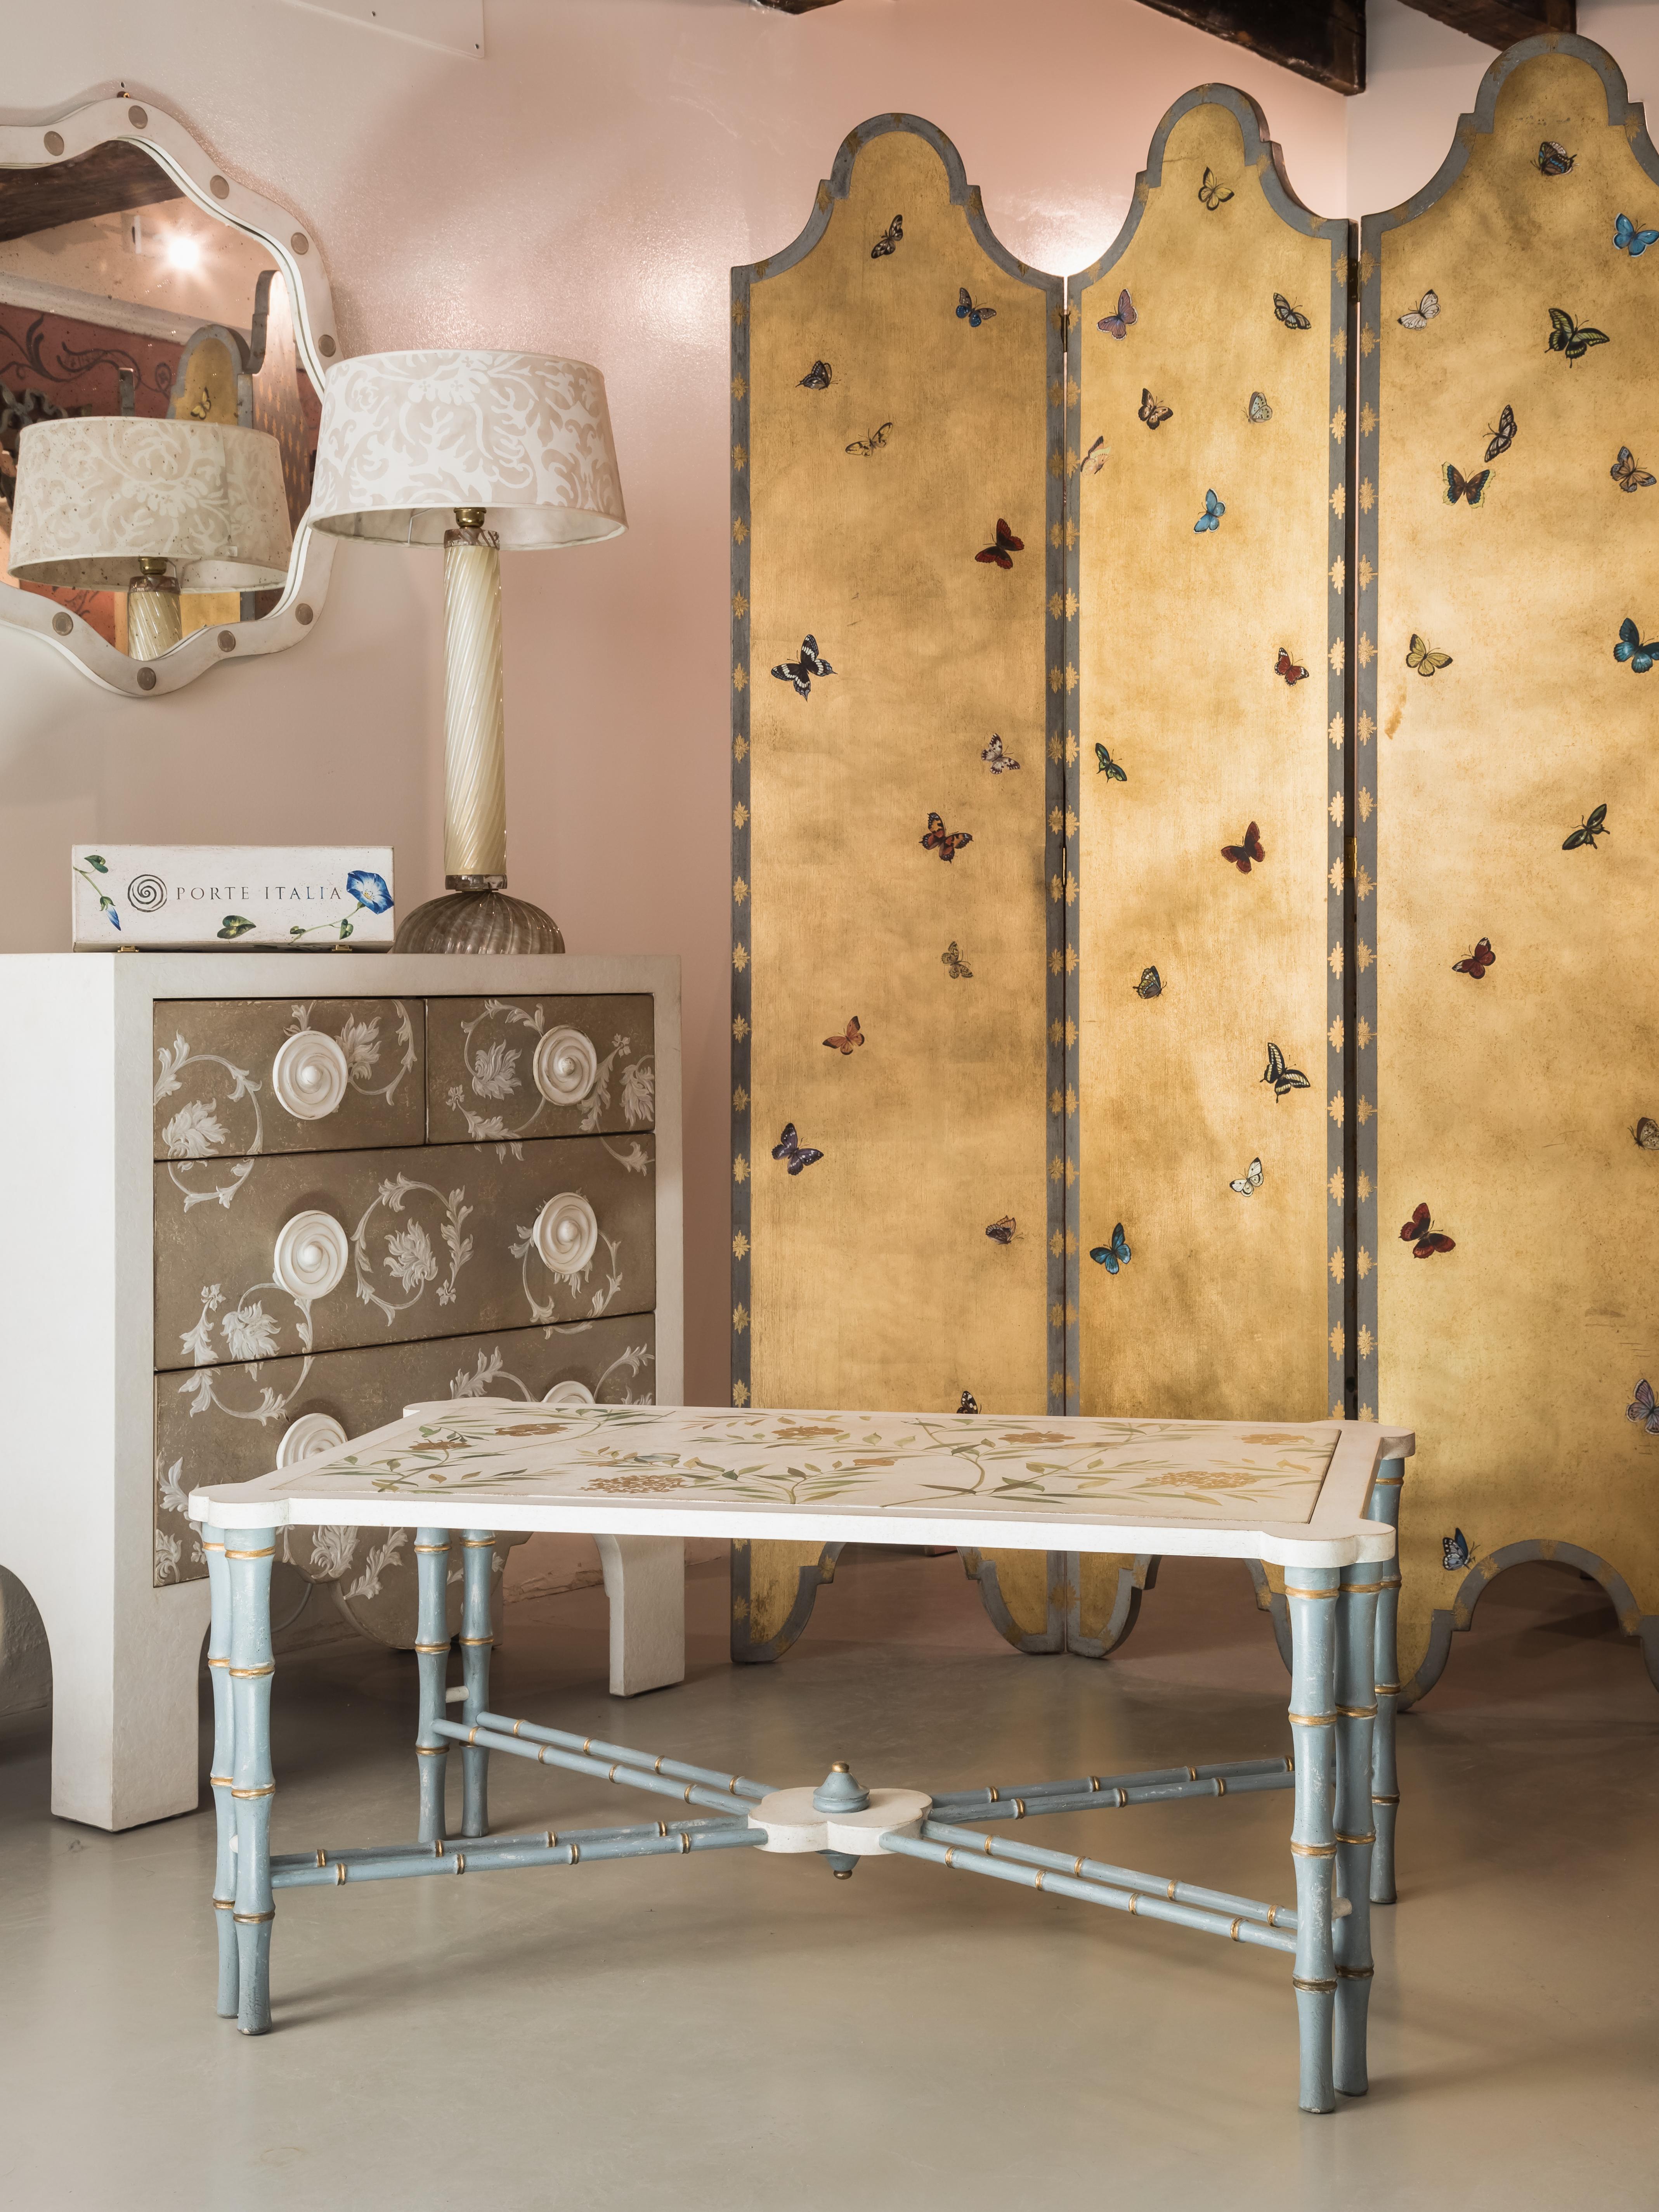 De notre collection de meubles peints à la main, nous avons le plaisir de vous présenter notre table basse Marco Polo en bambou bleu-gris avec décor de feuillage chinoiseries. 
Nous avons ajouté des accents dorés pour mettre en valeur la silhouette